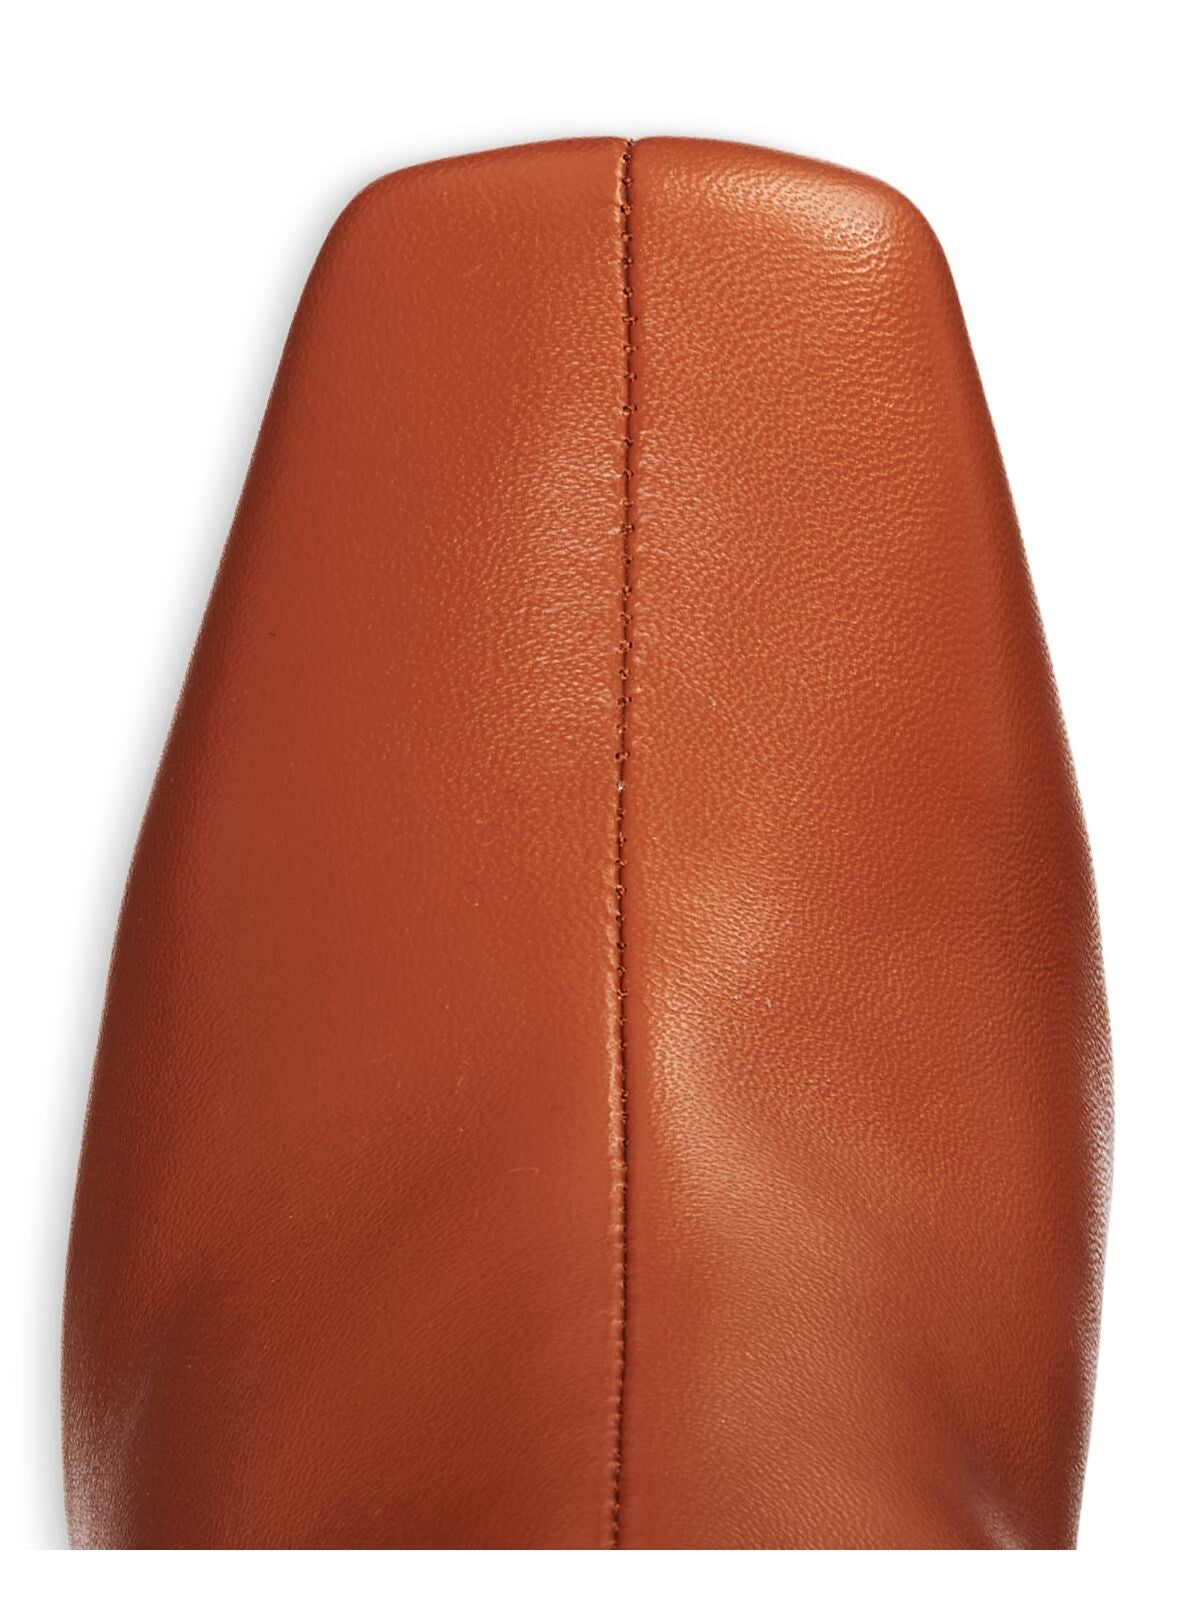 AQUA Womens Brown Comfort Goring Juno Square Toe Block Heel Zip-Up Leather Booties 10 M